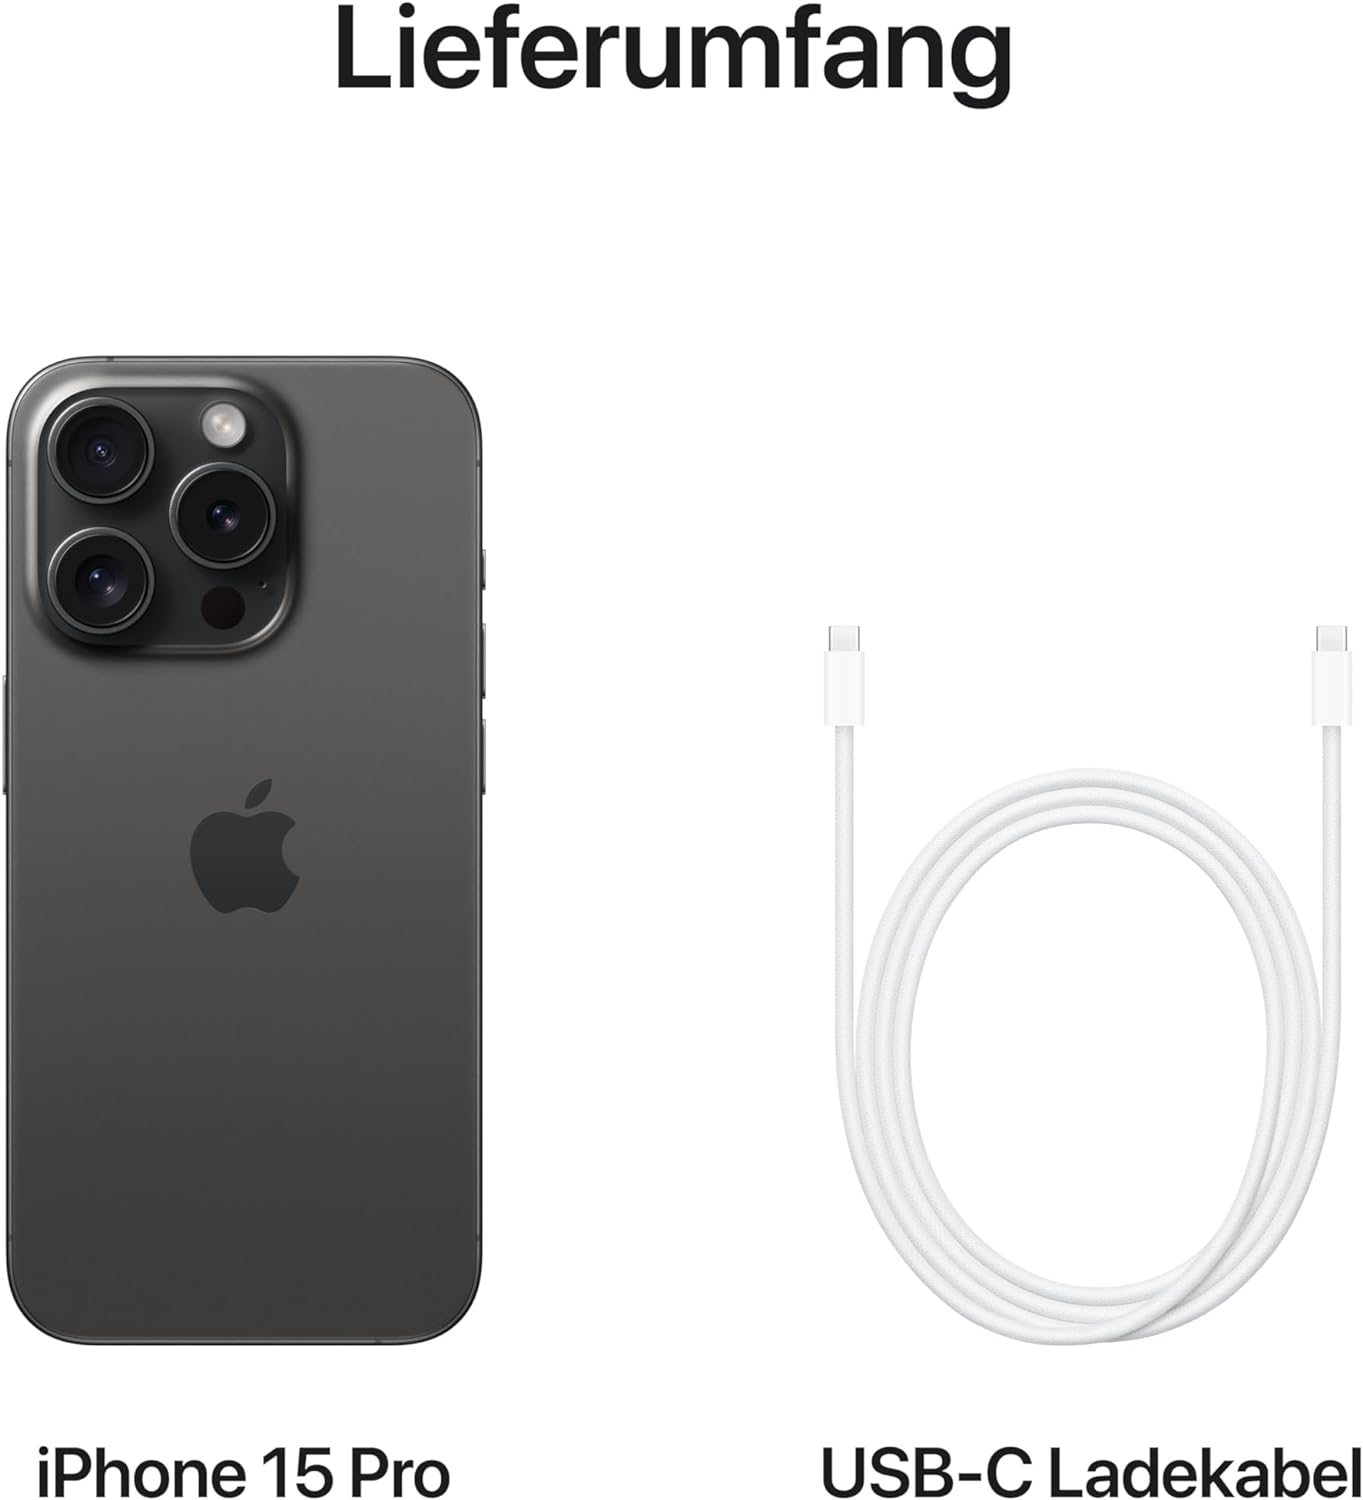 Apple iPhone 15 Pro Max (256GB) - Titanium Black